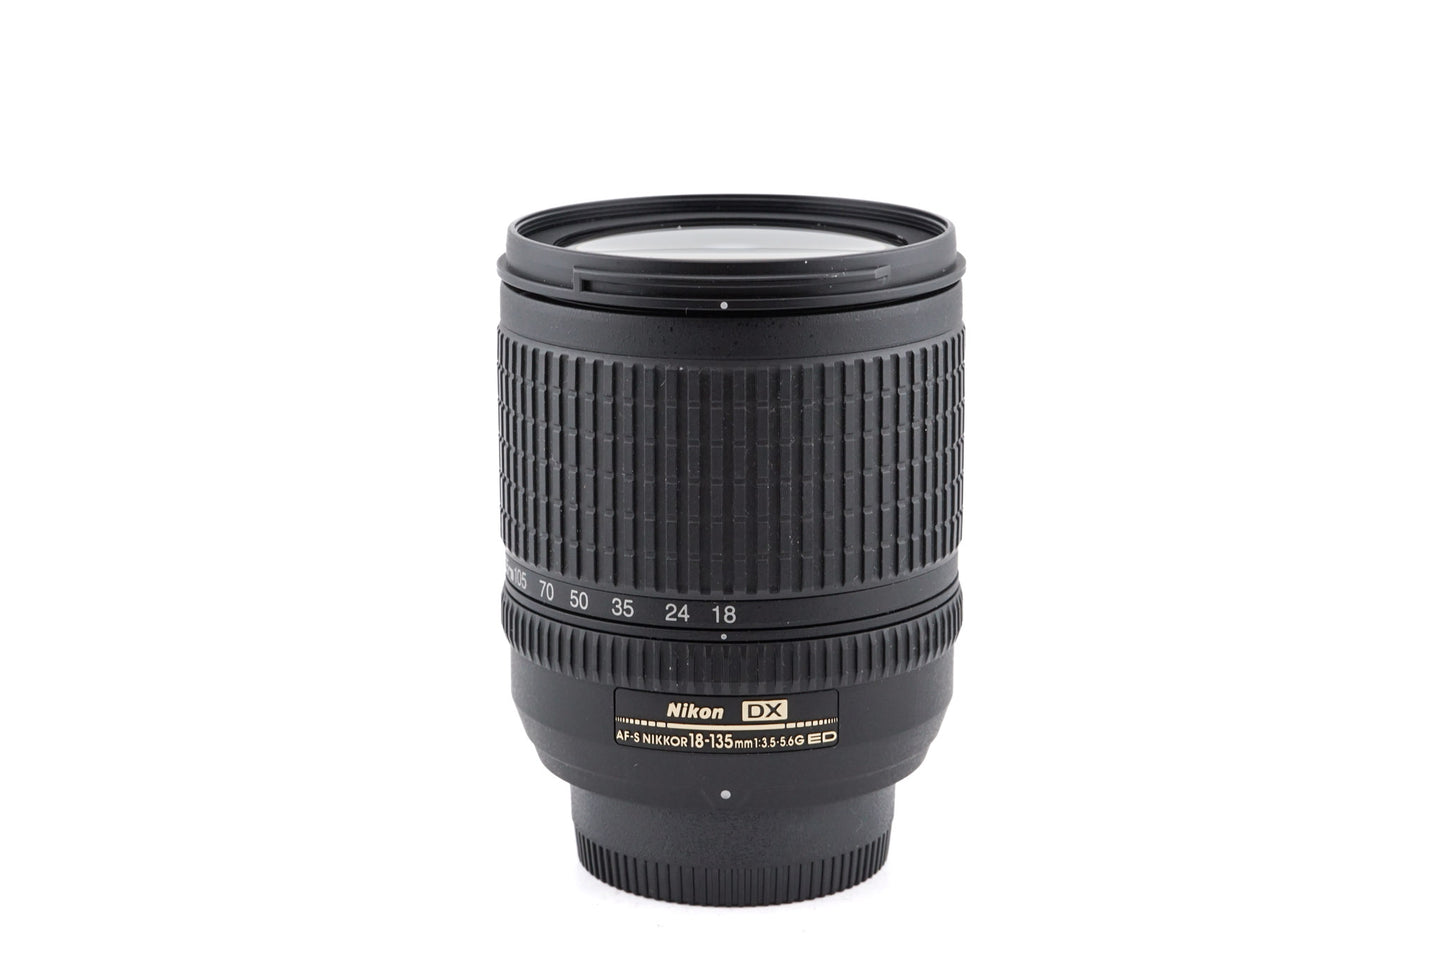 Nikon 18-135mm f3.5-5.6 G ED-IF AF-S Nikkor - Lens